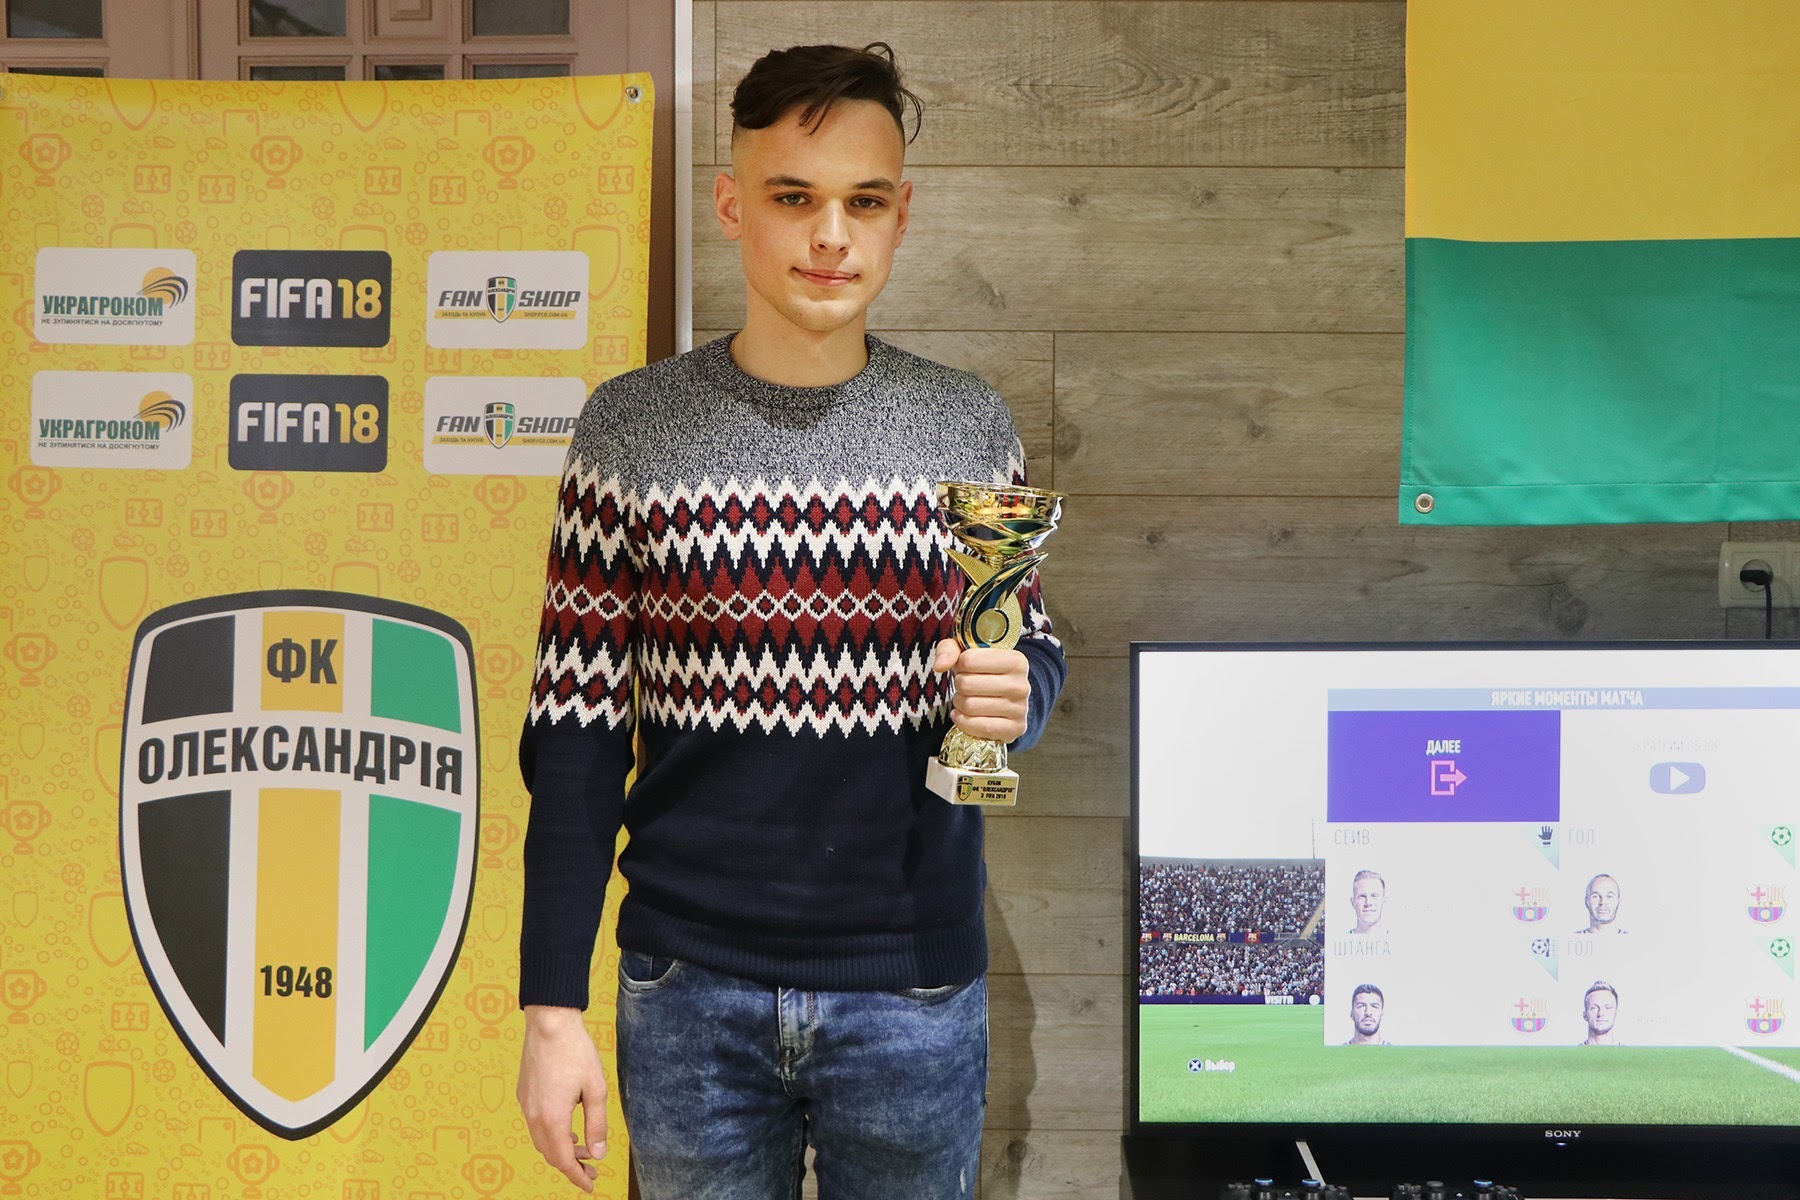 ФК "Олександрія" провела перший турнір по FIFA 18 - изображение 1